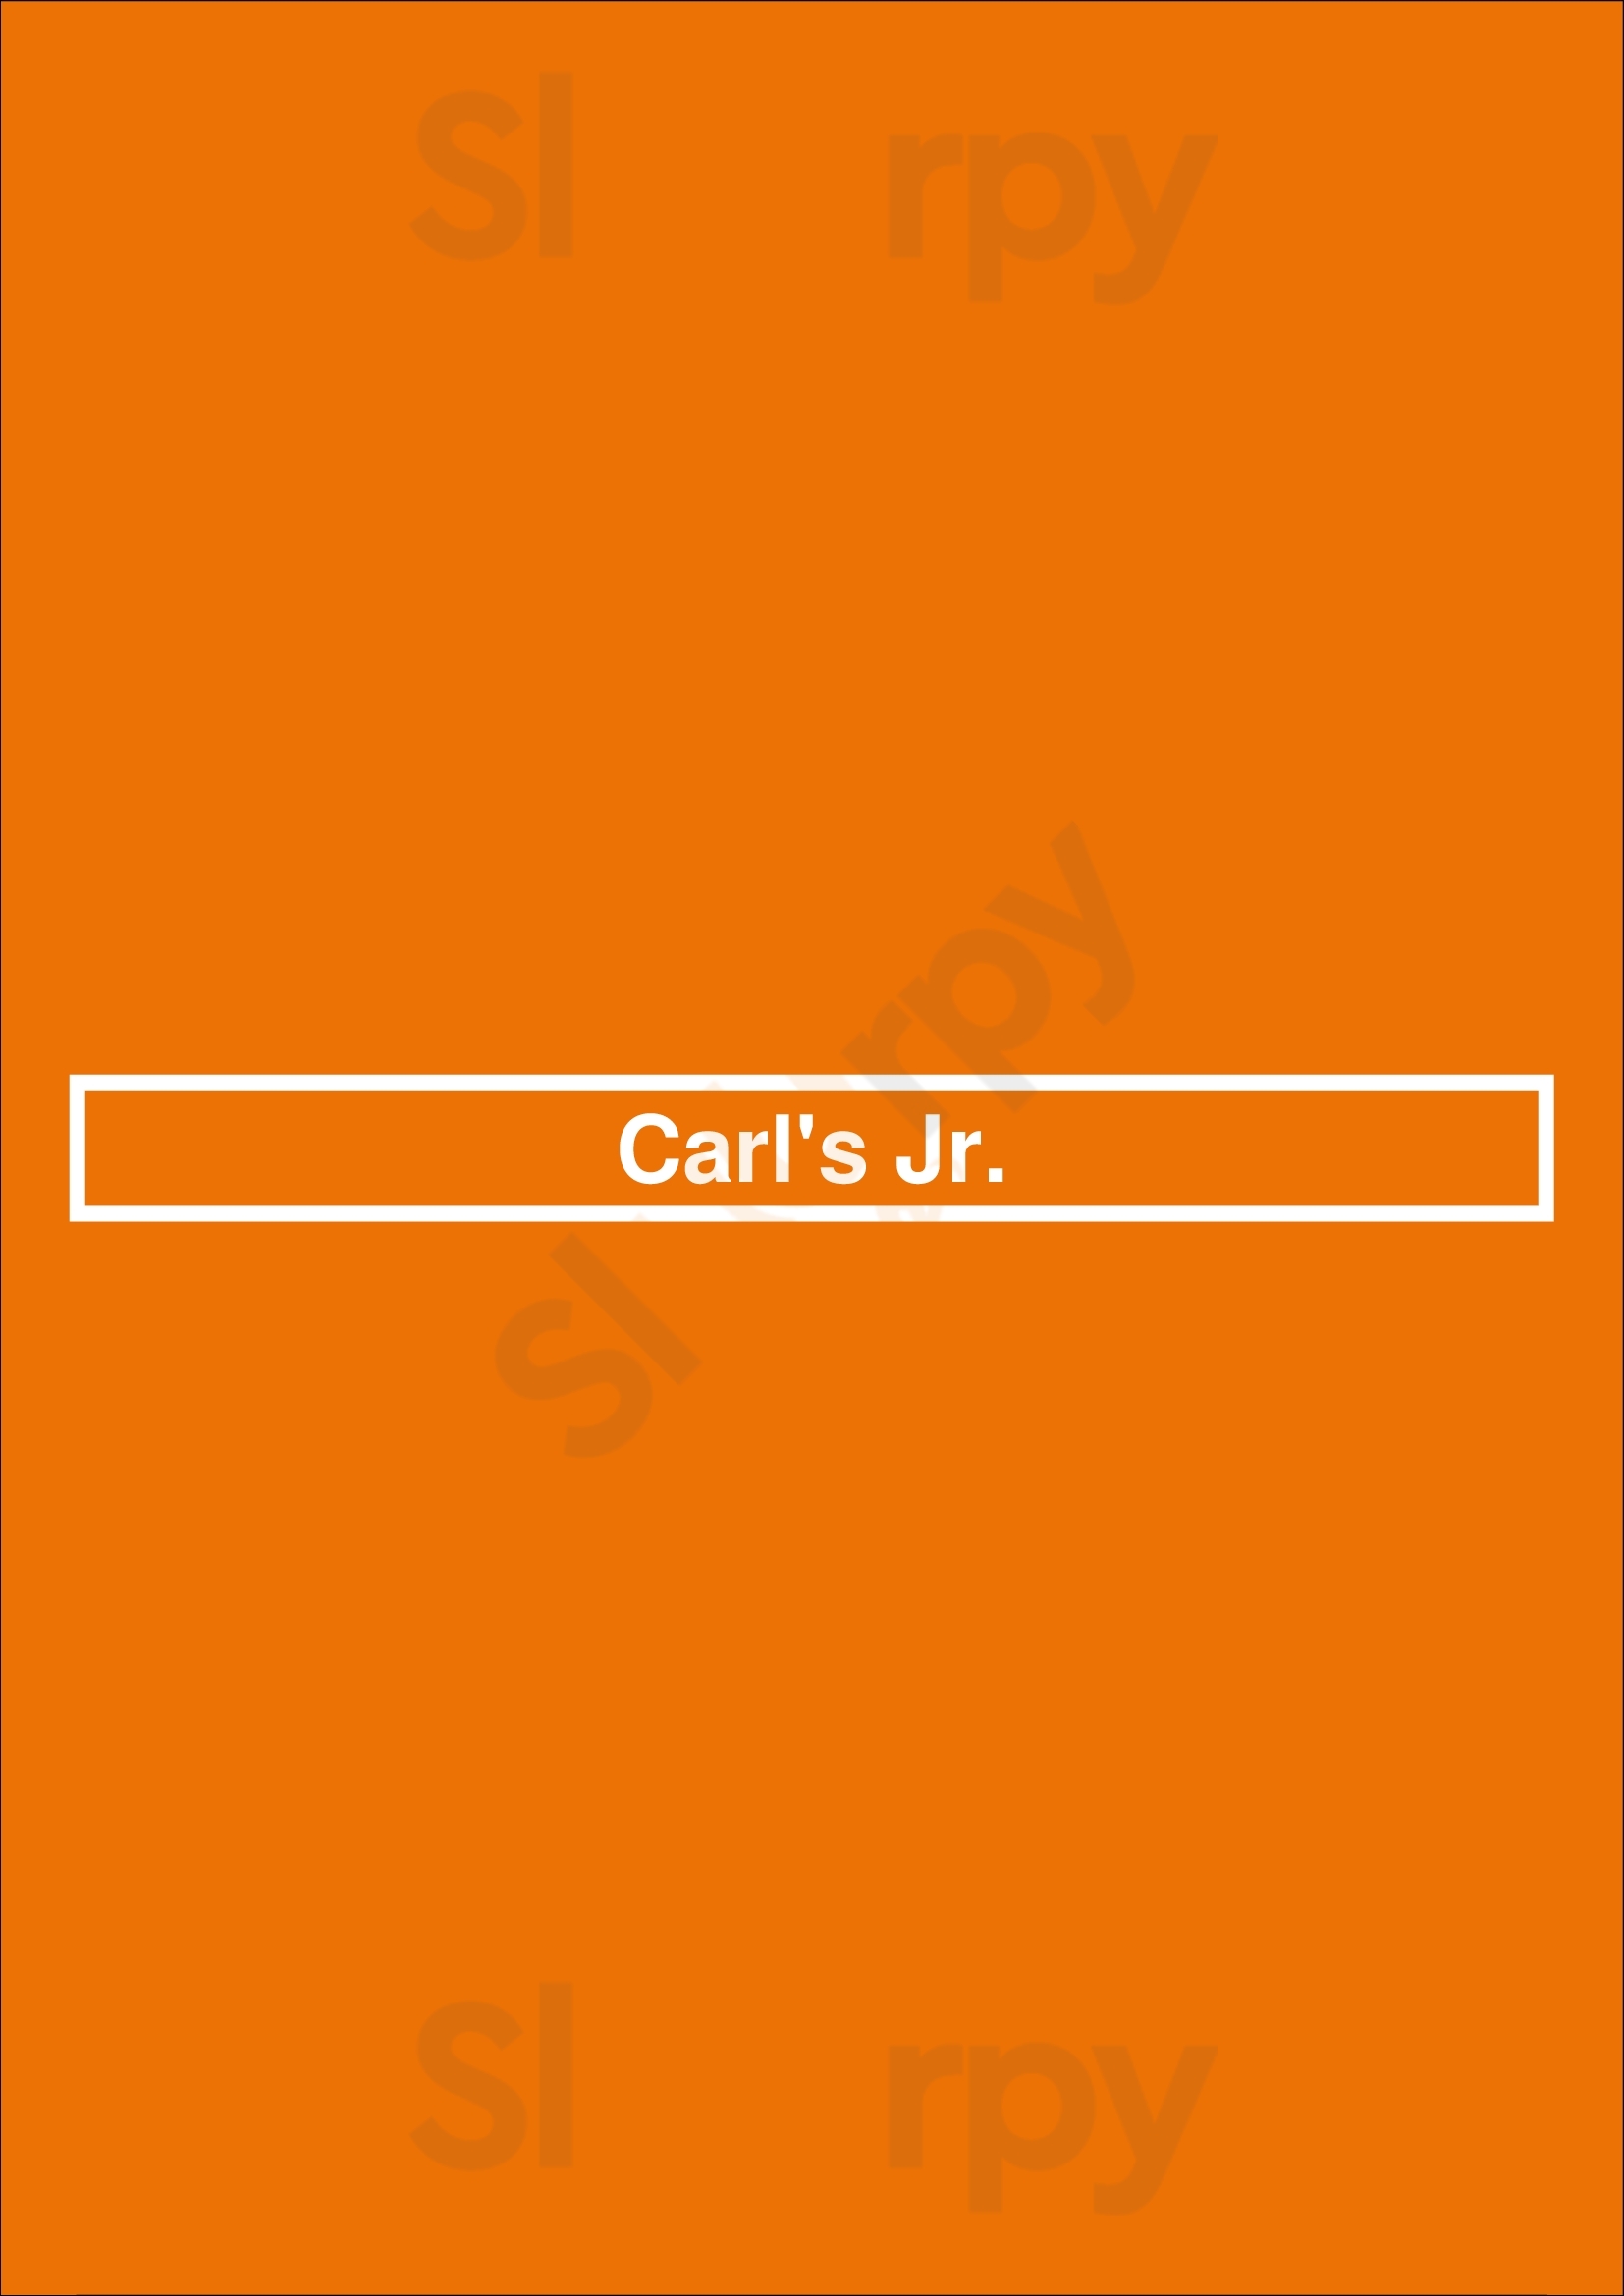 Carl's Jr. Los Angeles Menu - 1